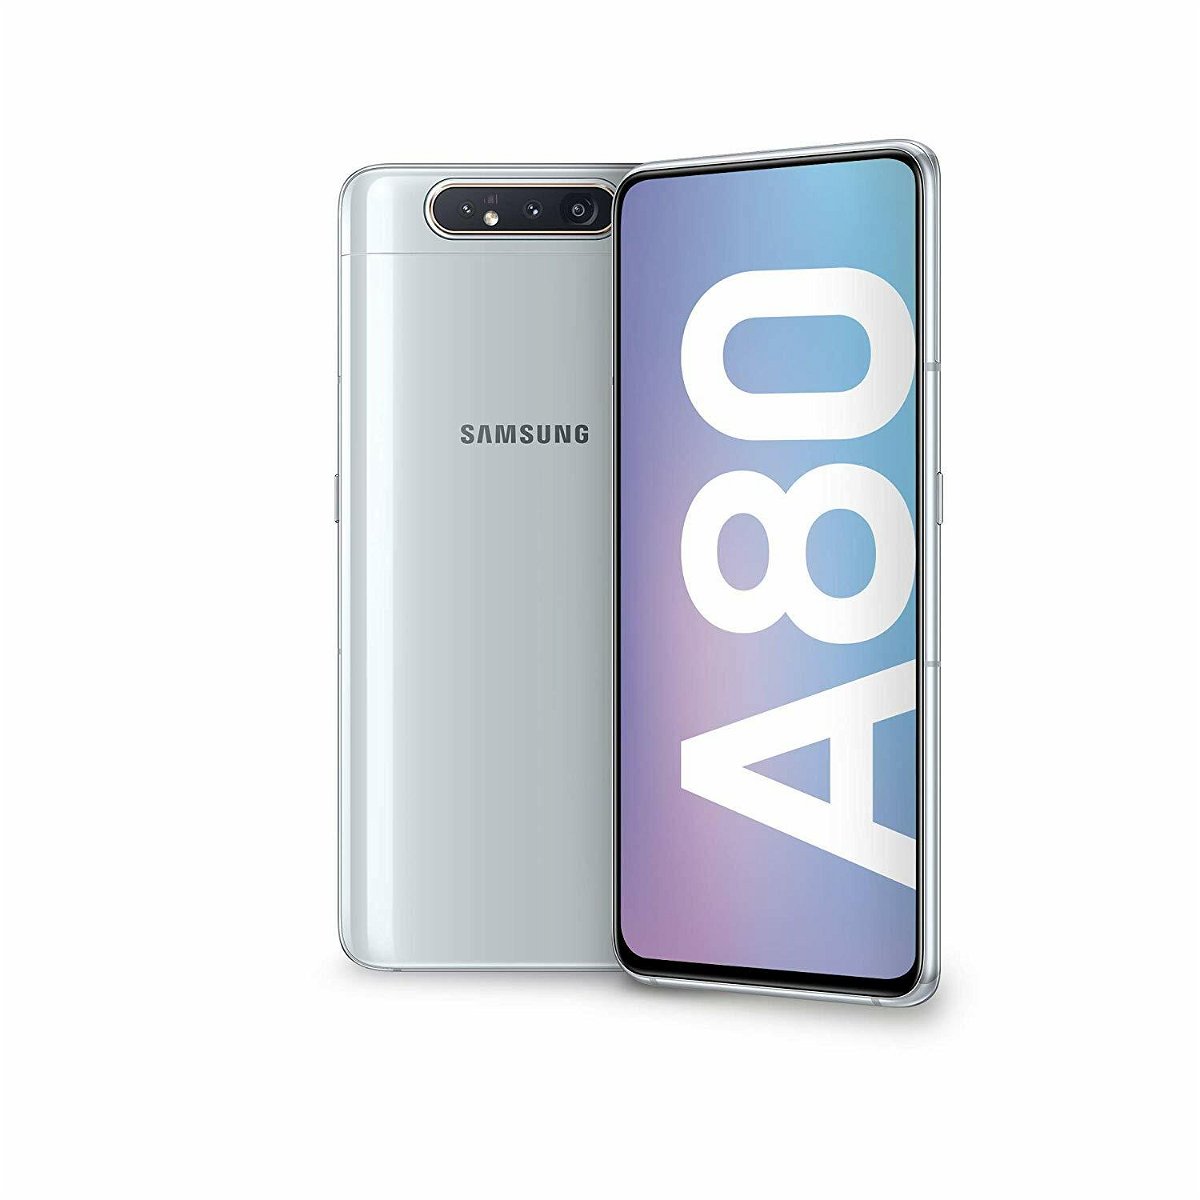 Immagine stampa del Samsung Galaxy A80